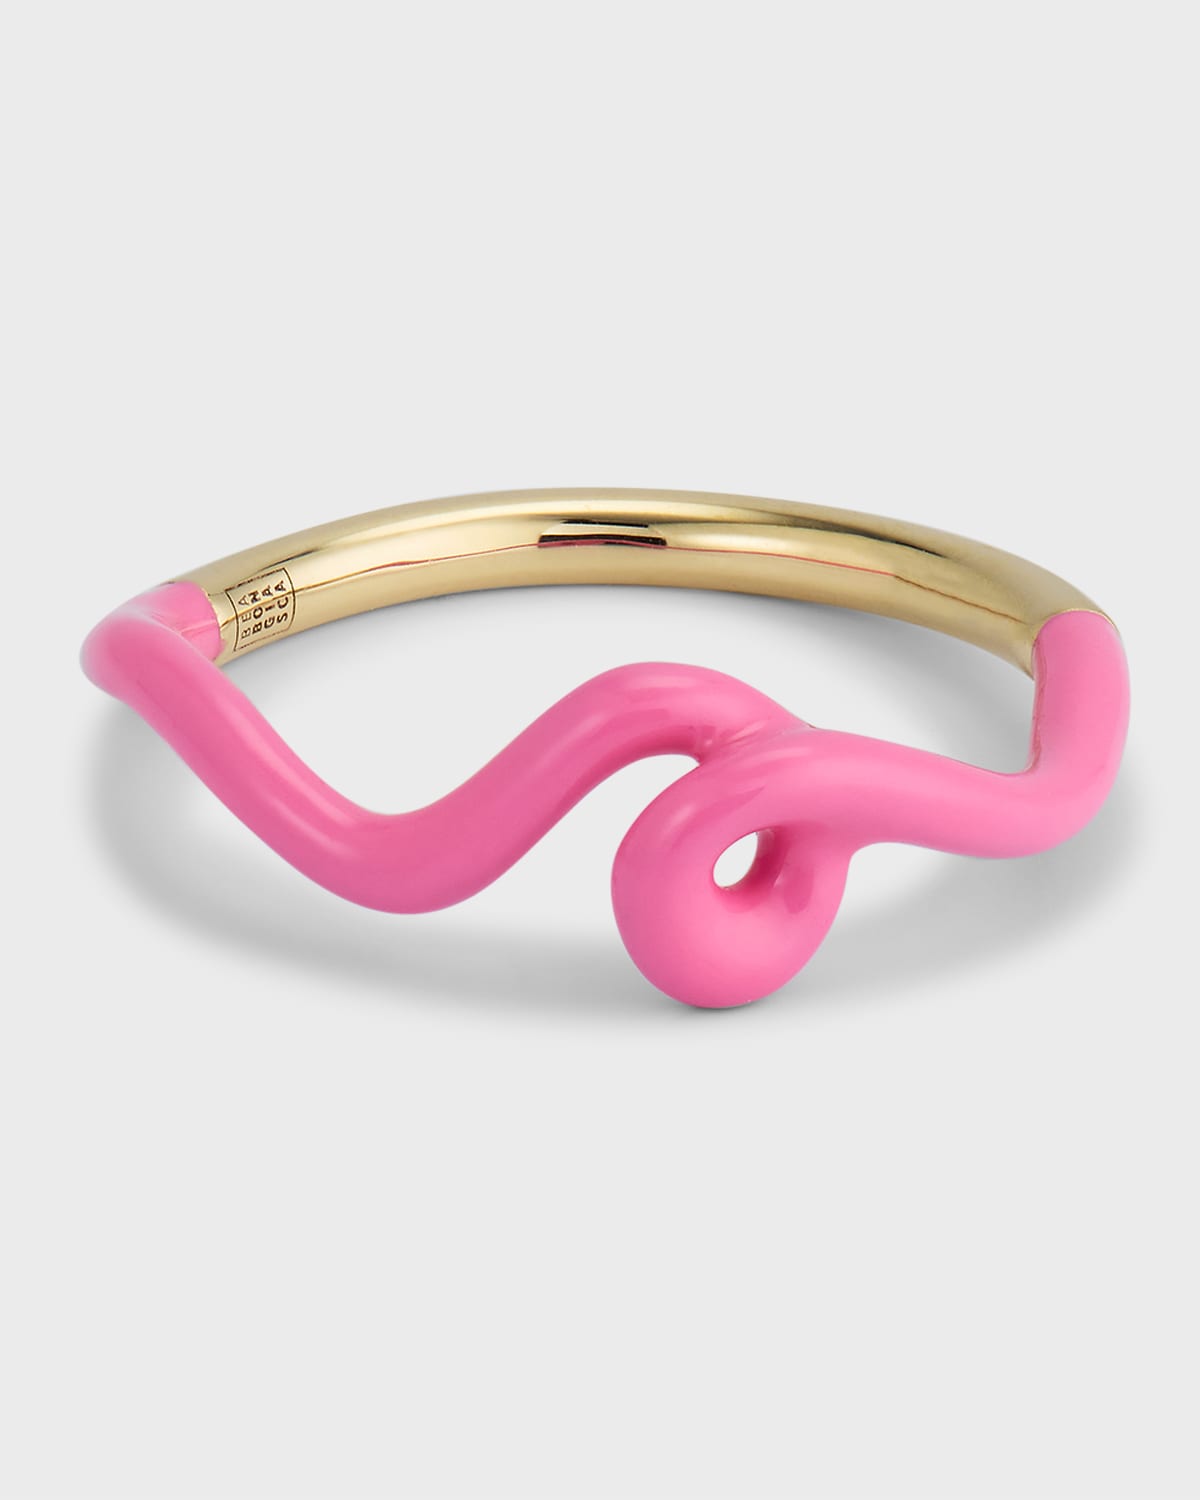 Bea Bongiasca Wave 9-karat Gold And Enamel Ring In Bubblegum Pink